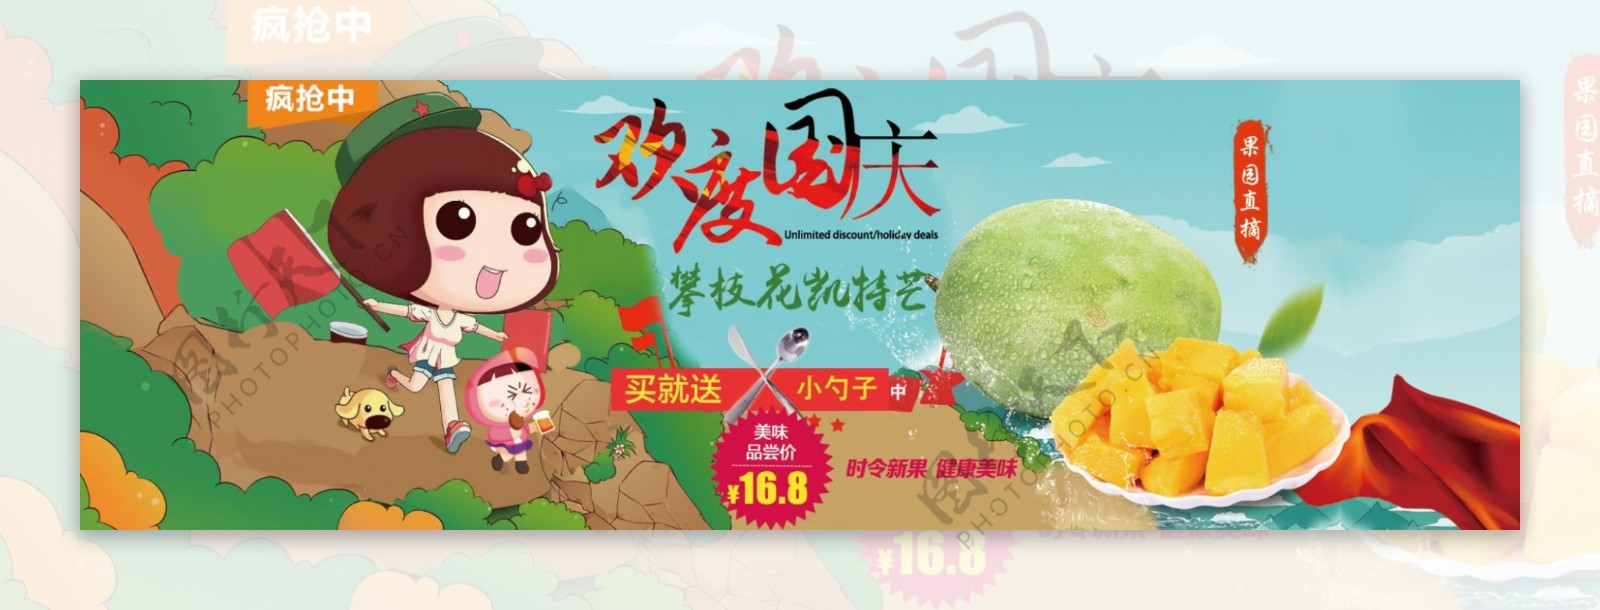 淘宝天猫水果店铺欢度国庆促销活动海报